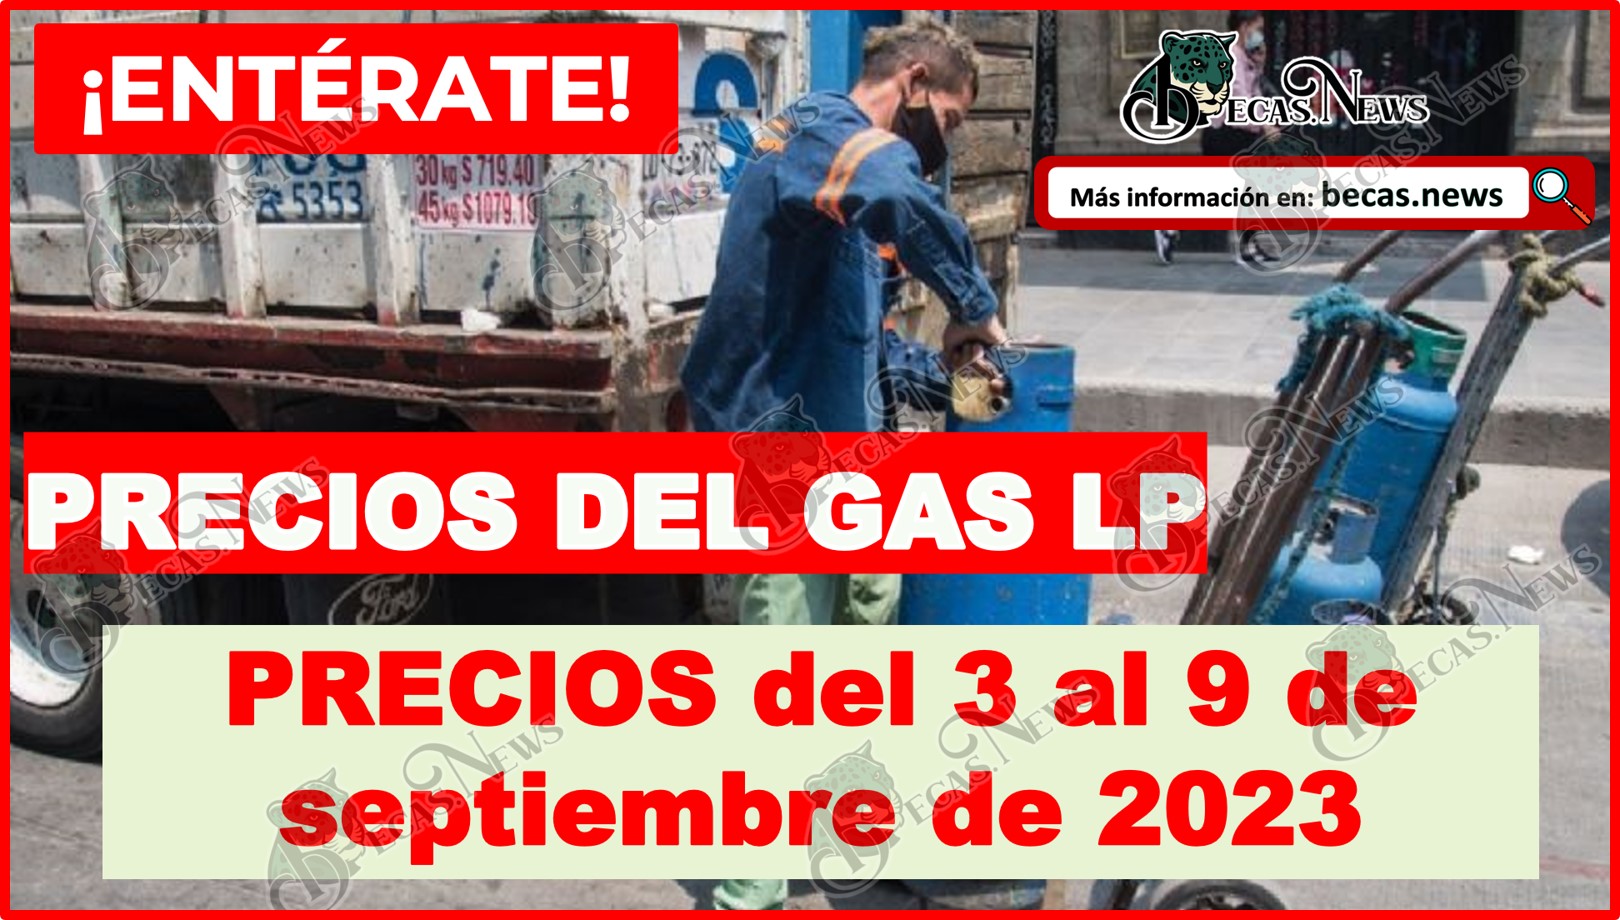 ¡PRECIOS del gas LP sigue a la BAJA! Costo del 3 al 9 de septiembre 2023